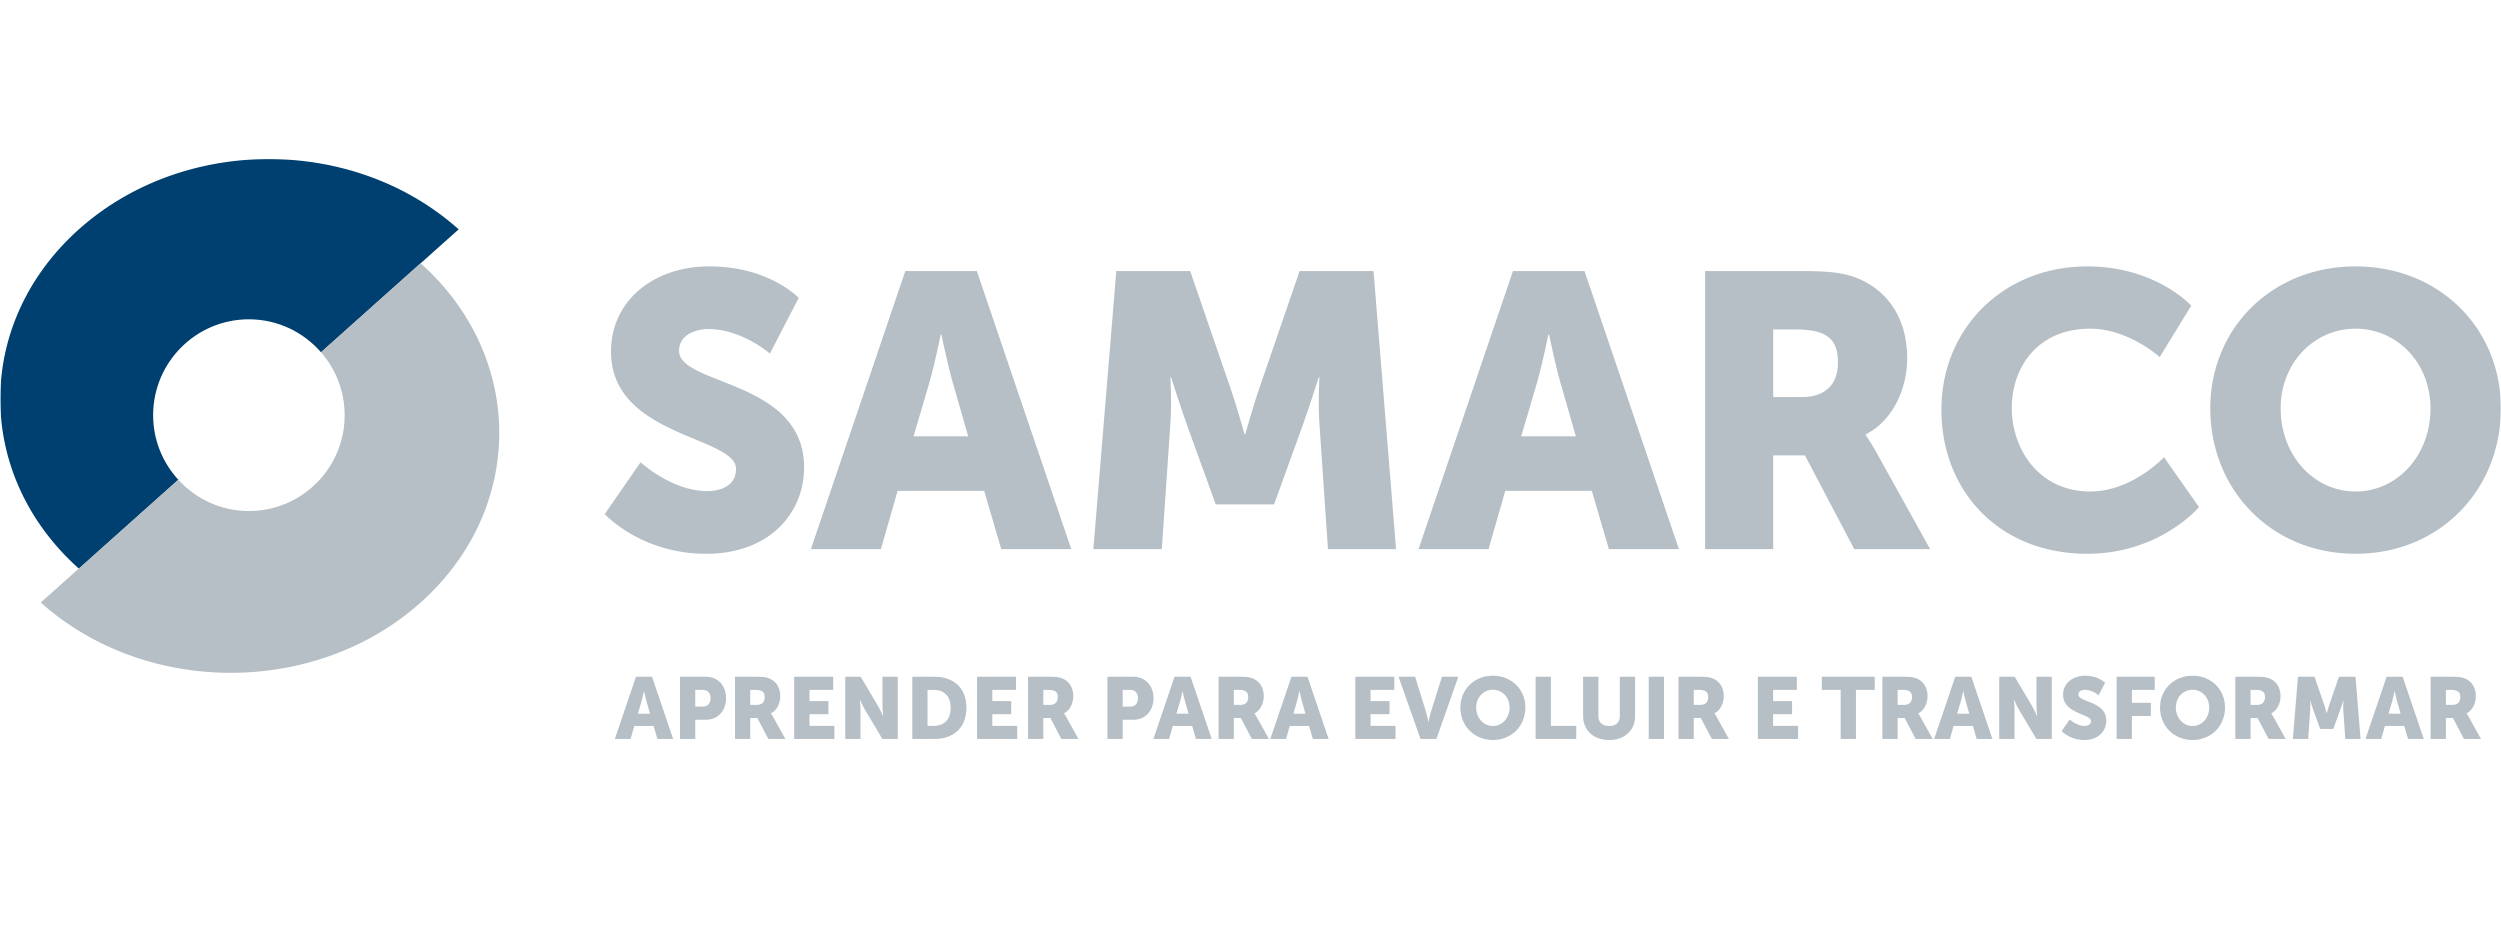 Samarco Logo | Corporate culture